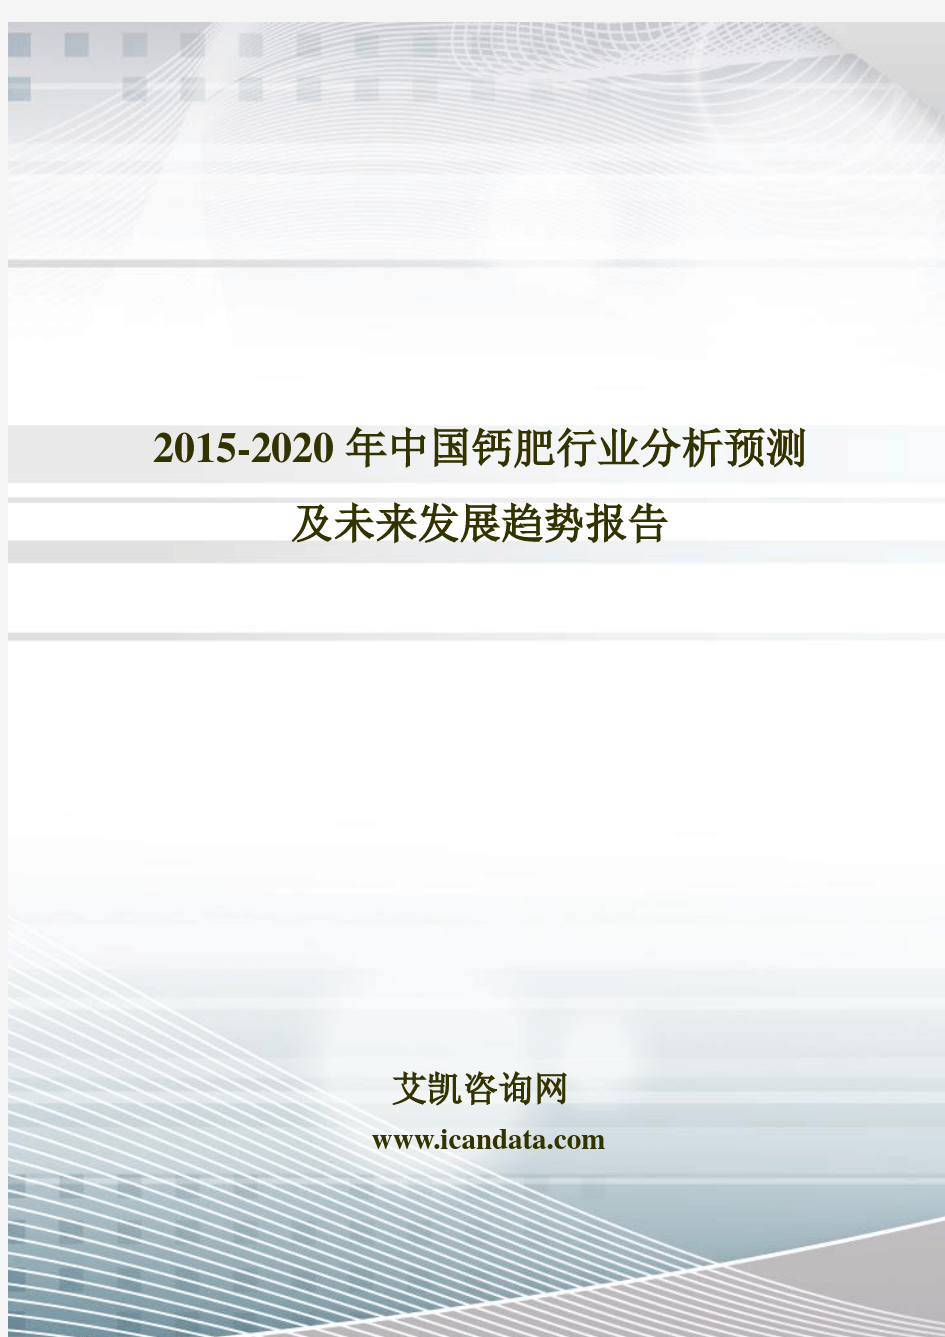 2015-2020年中国钙肥行业分析预测及未来发展趋势报告